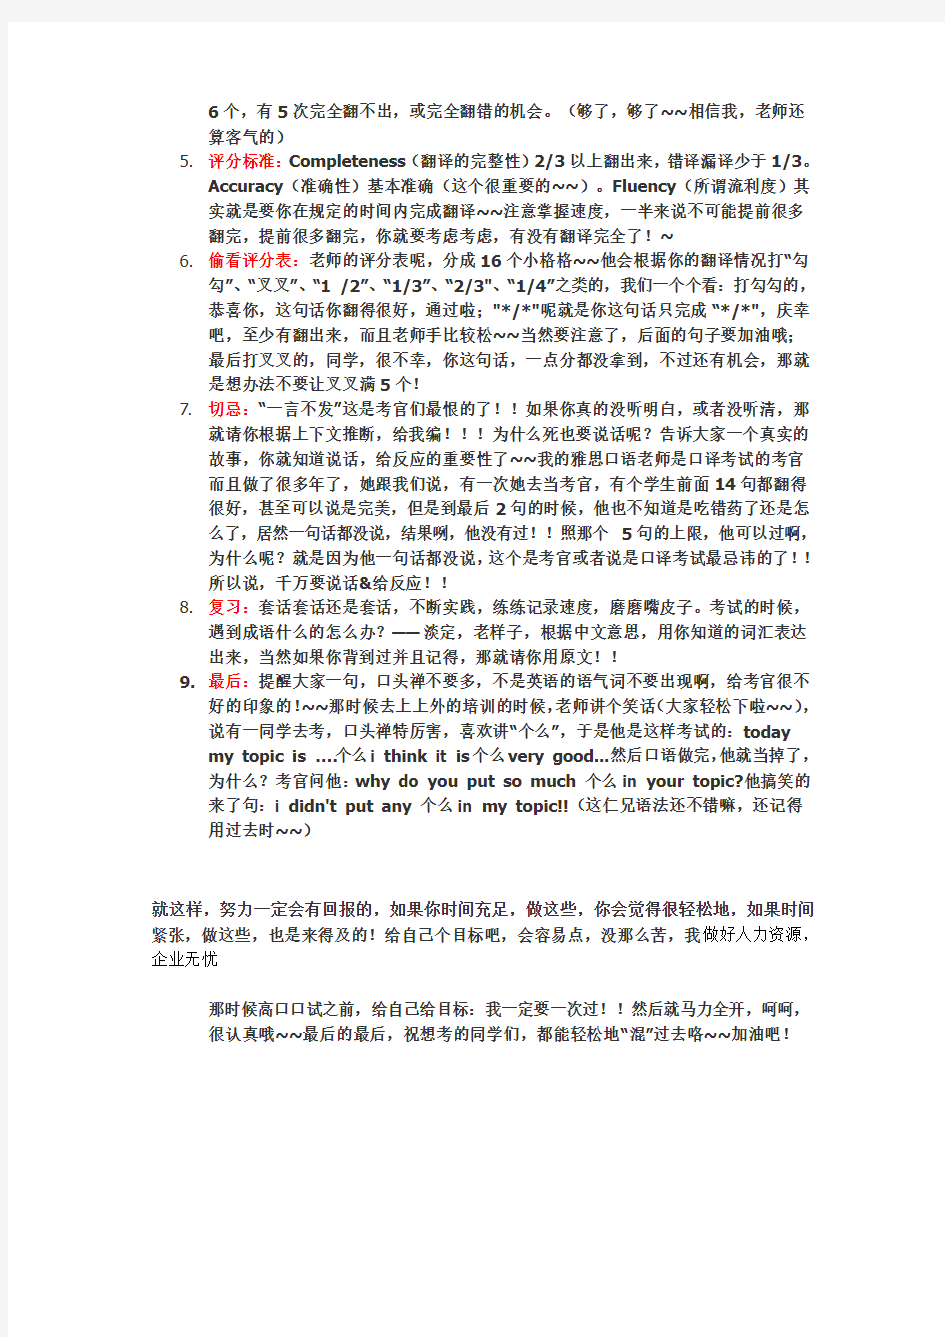 教你如何一次过口试——上海市中高级口译口试实录【附评分表】